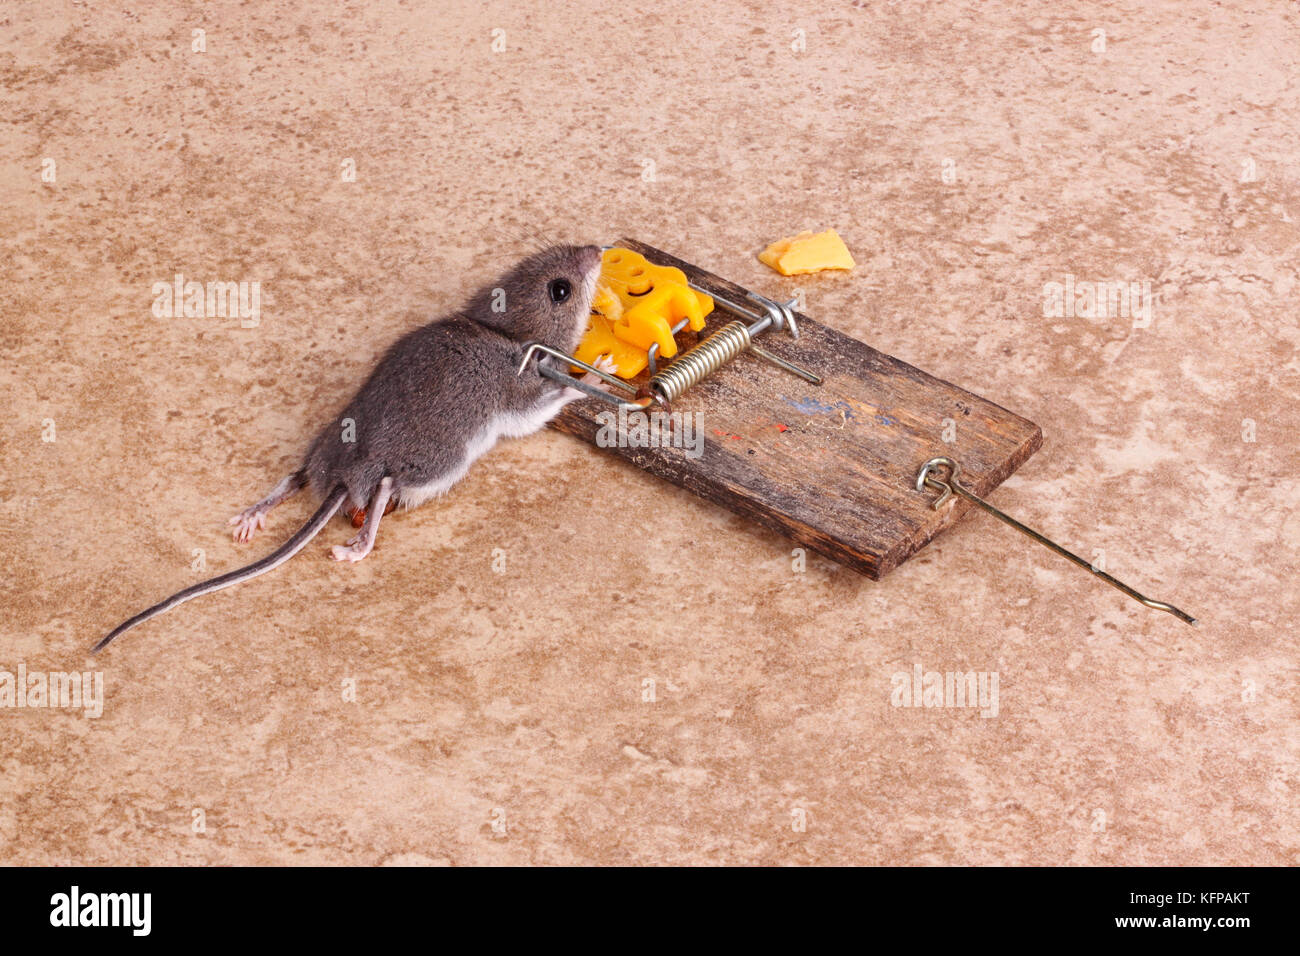 Casa común, ratón (Mus musculus), asesinado en un bar de resorte snap trap sobre un fondo de piso de mosaico Foto de stock